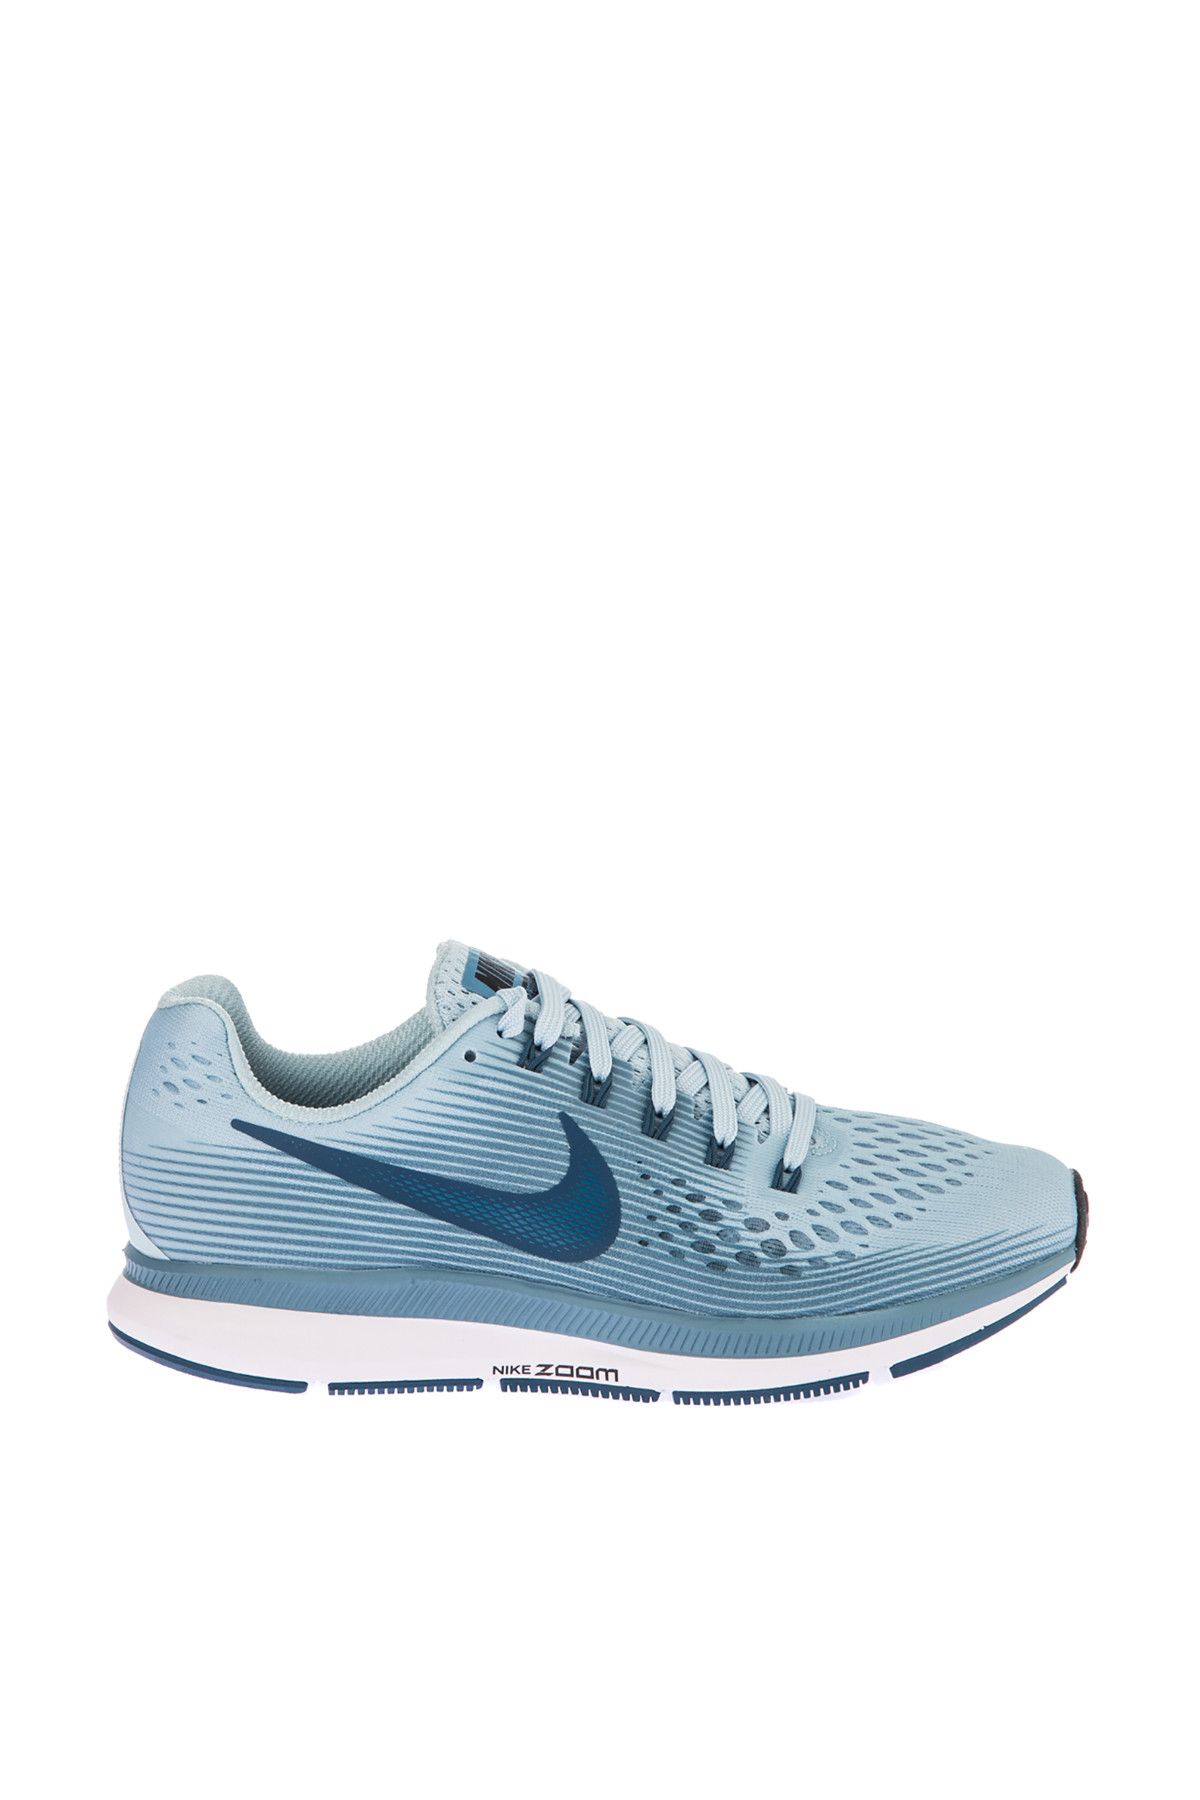 Nike Kadın Spor Ayakkabı - Womens Air Zoom Pegasus 34 Running - 880560-408